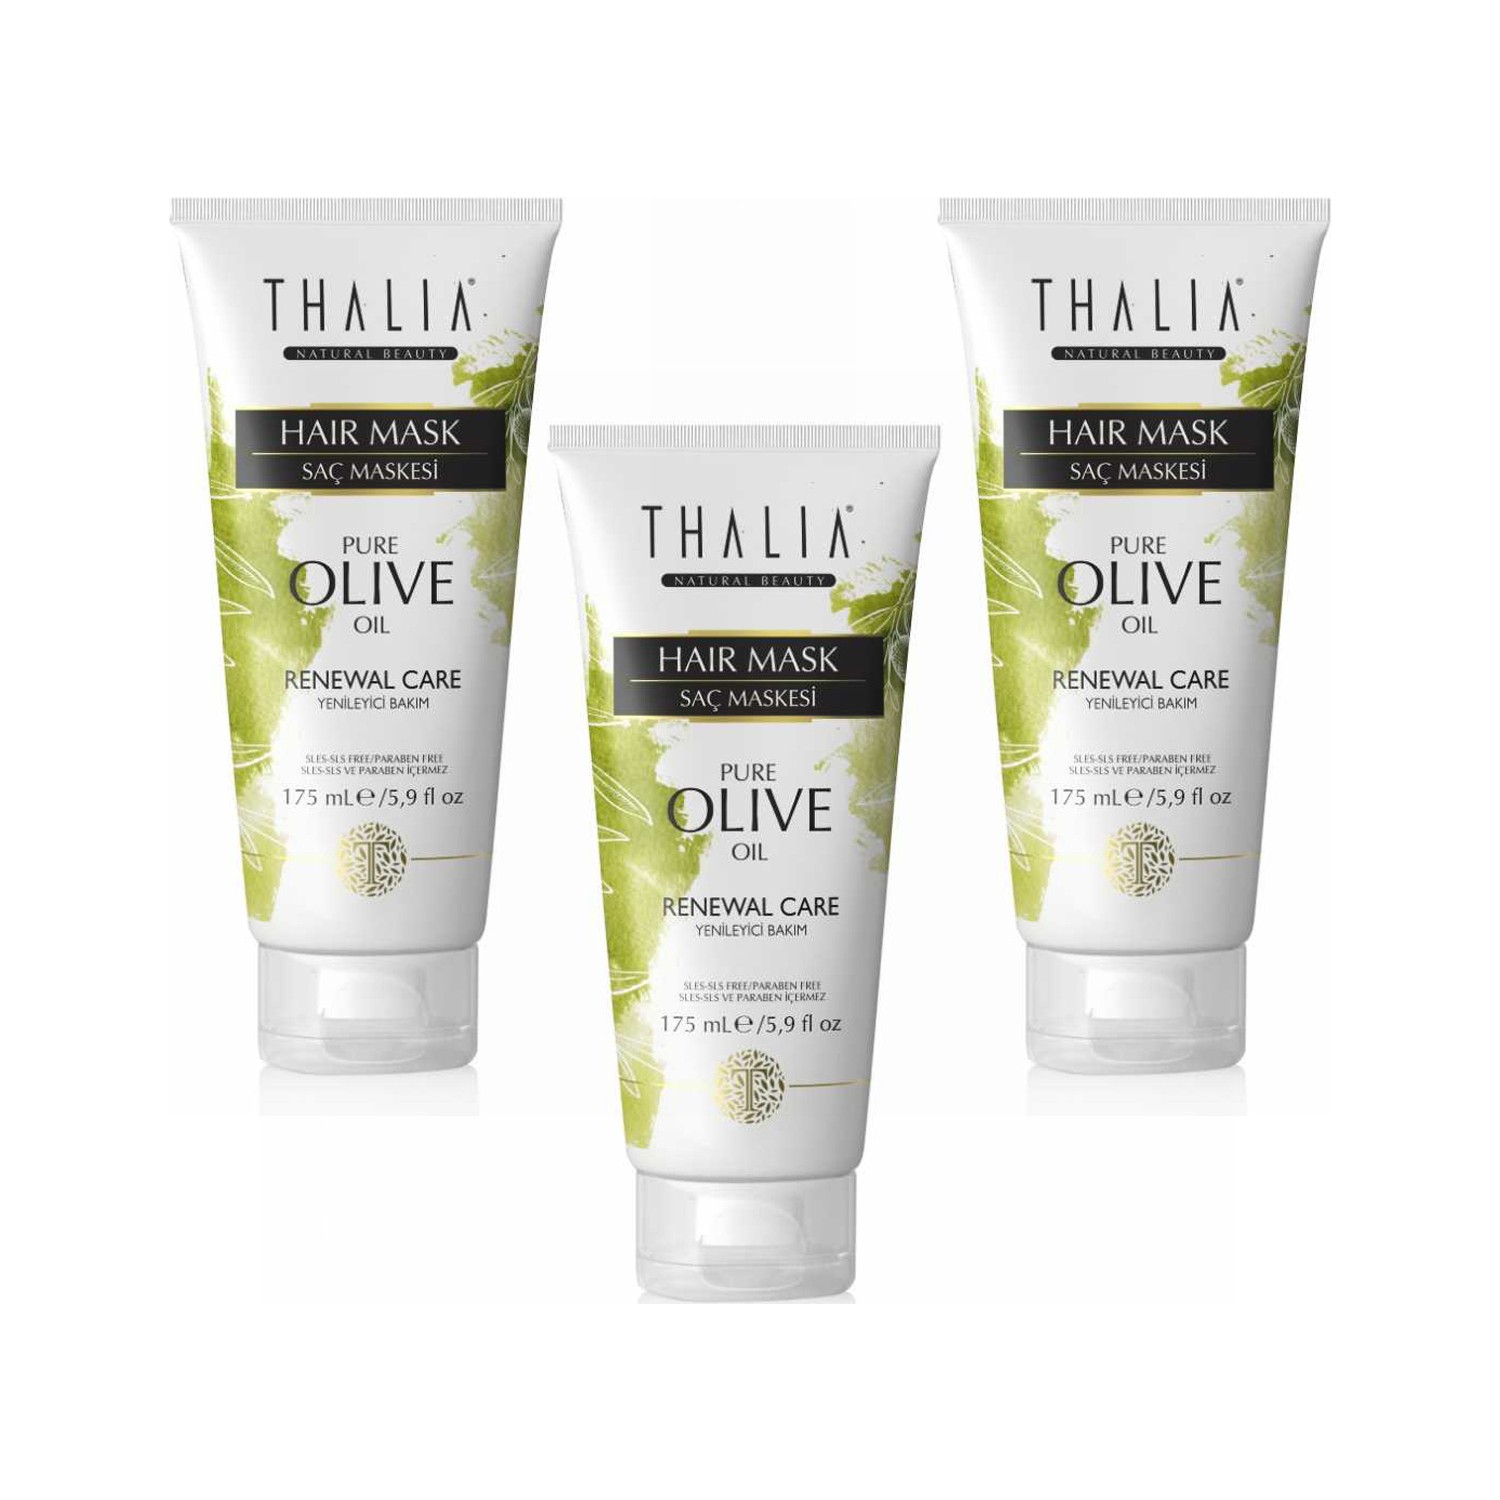 Маска Thalia Organic Olive Oil для ухода за волосами, 3 x 175 мл цена и фото